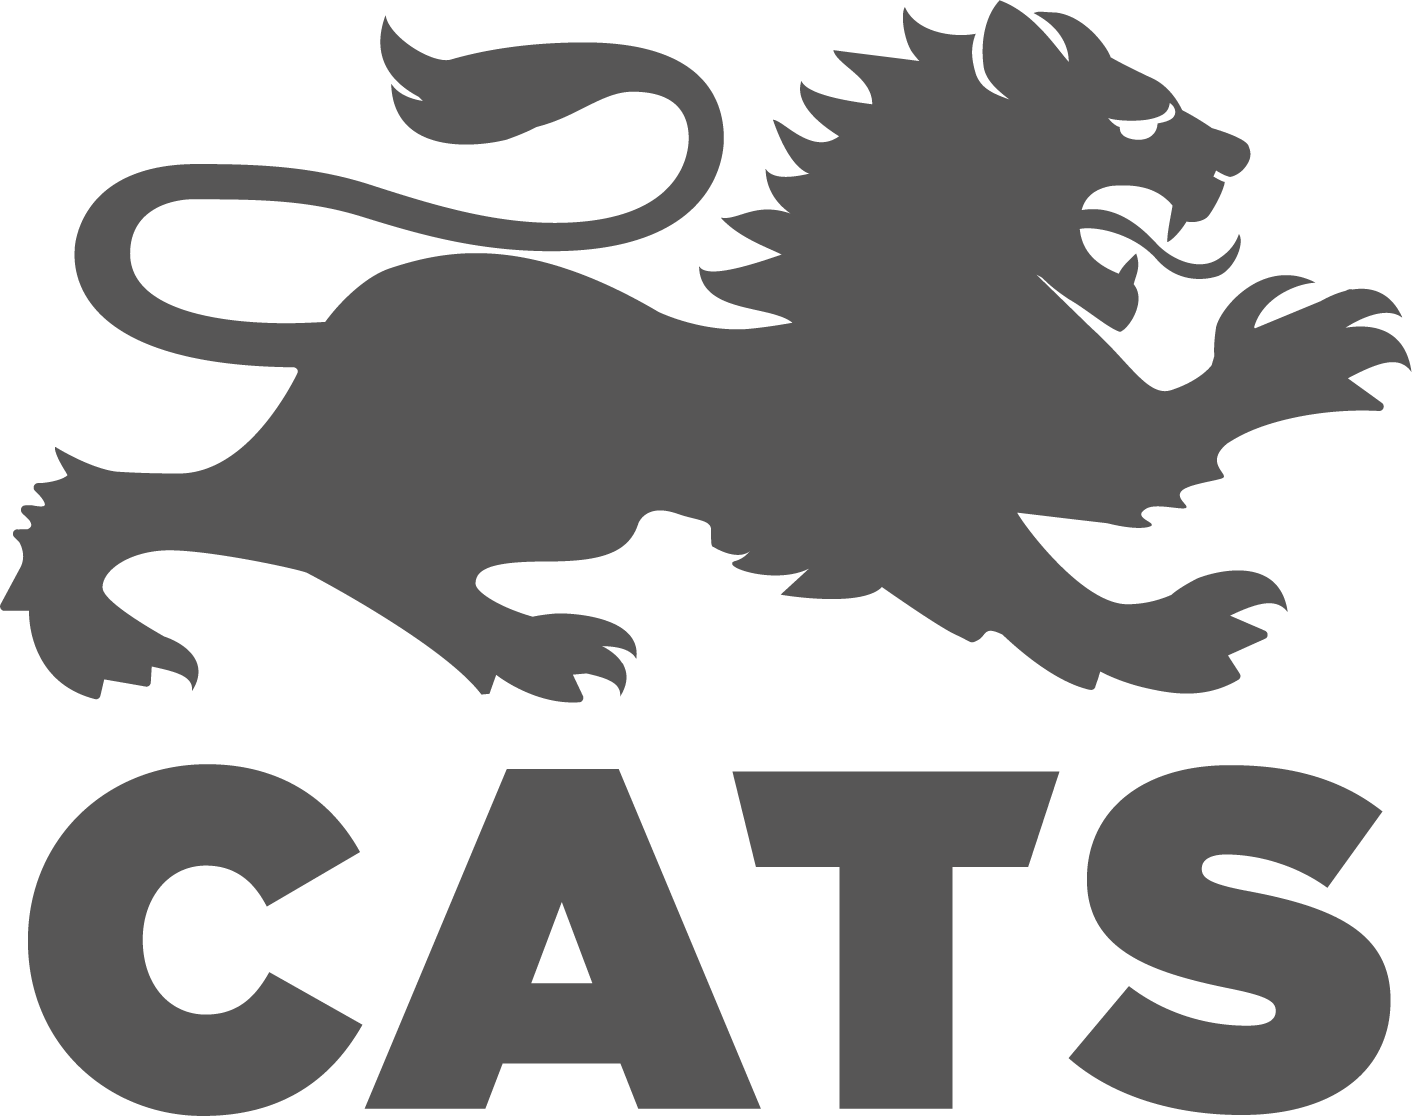 Cats - Cats Academy Boston Logo (1412x1116)